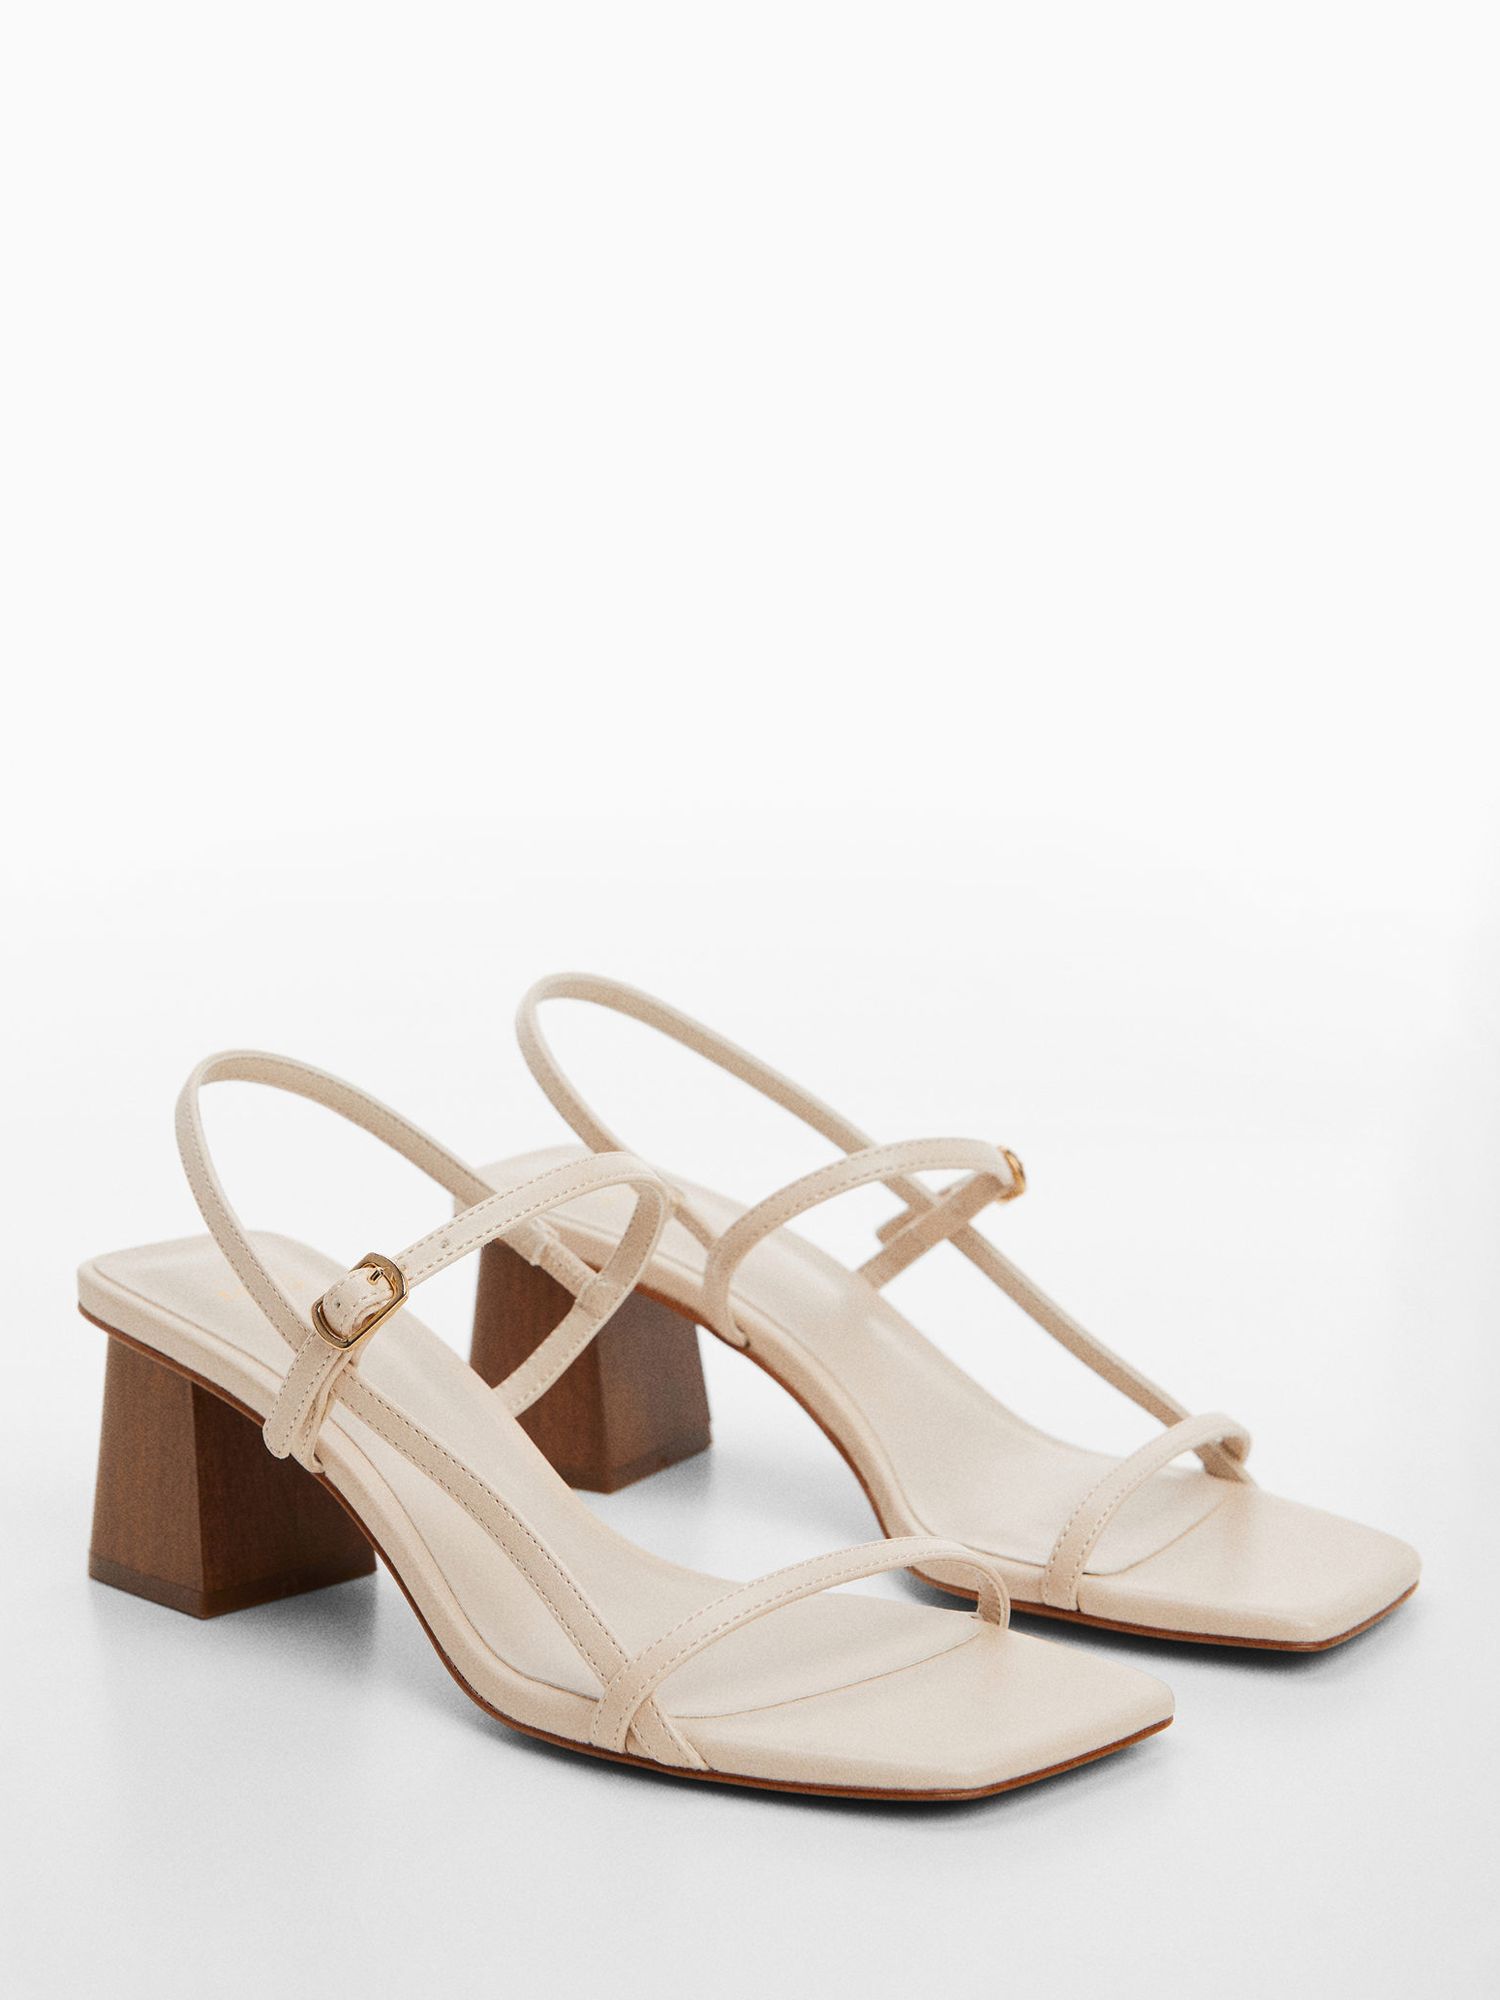 Buy Mango Vica Block Heel Sandals, Light Beige Online at johnlewis.com